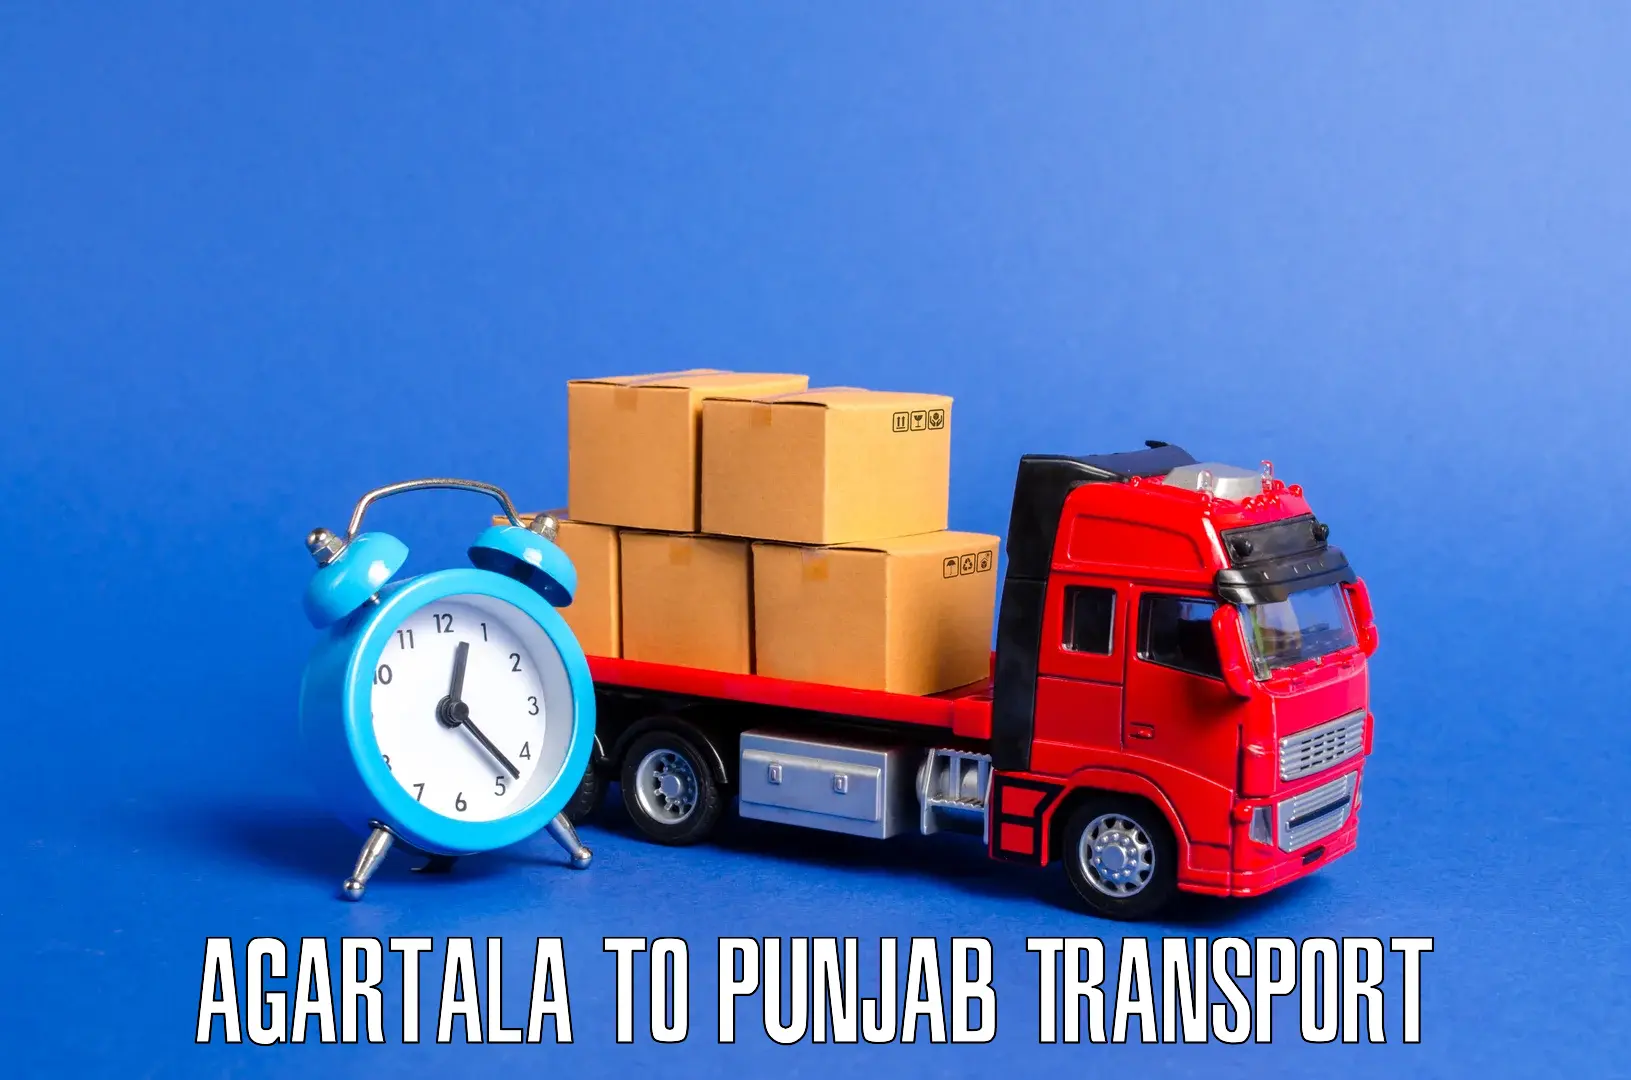 Road transport online services Agartala to Jalandhar